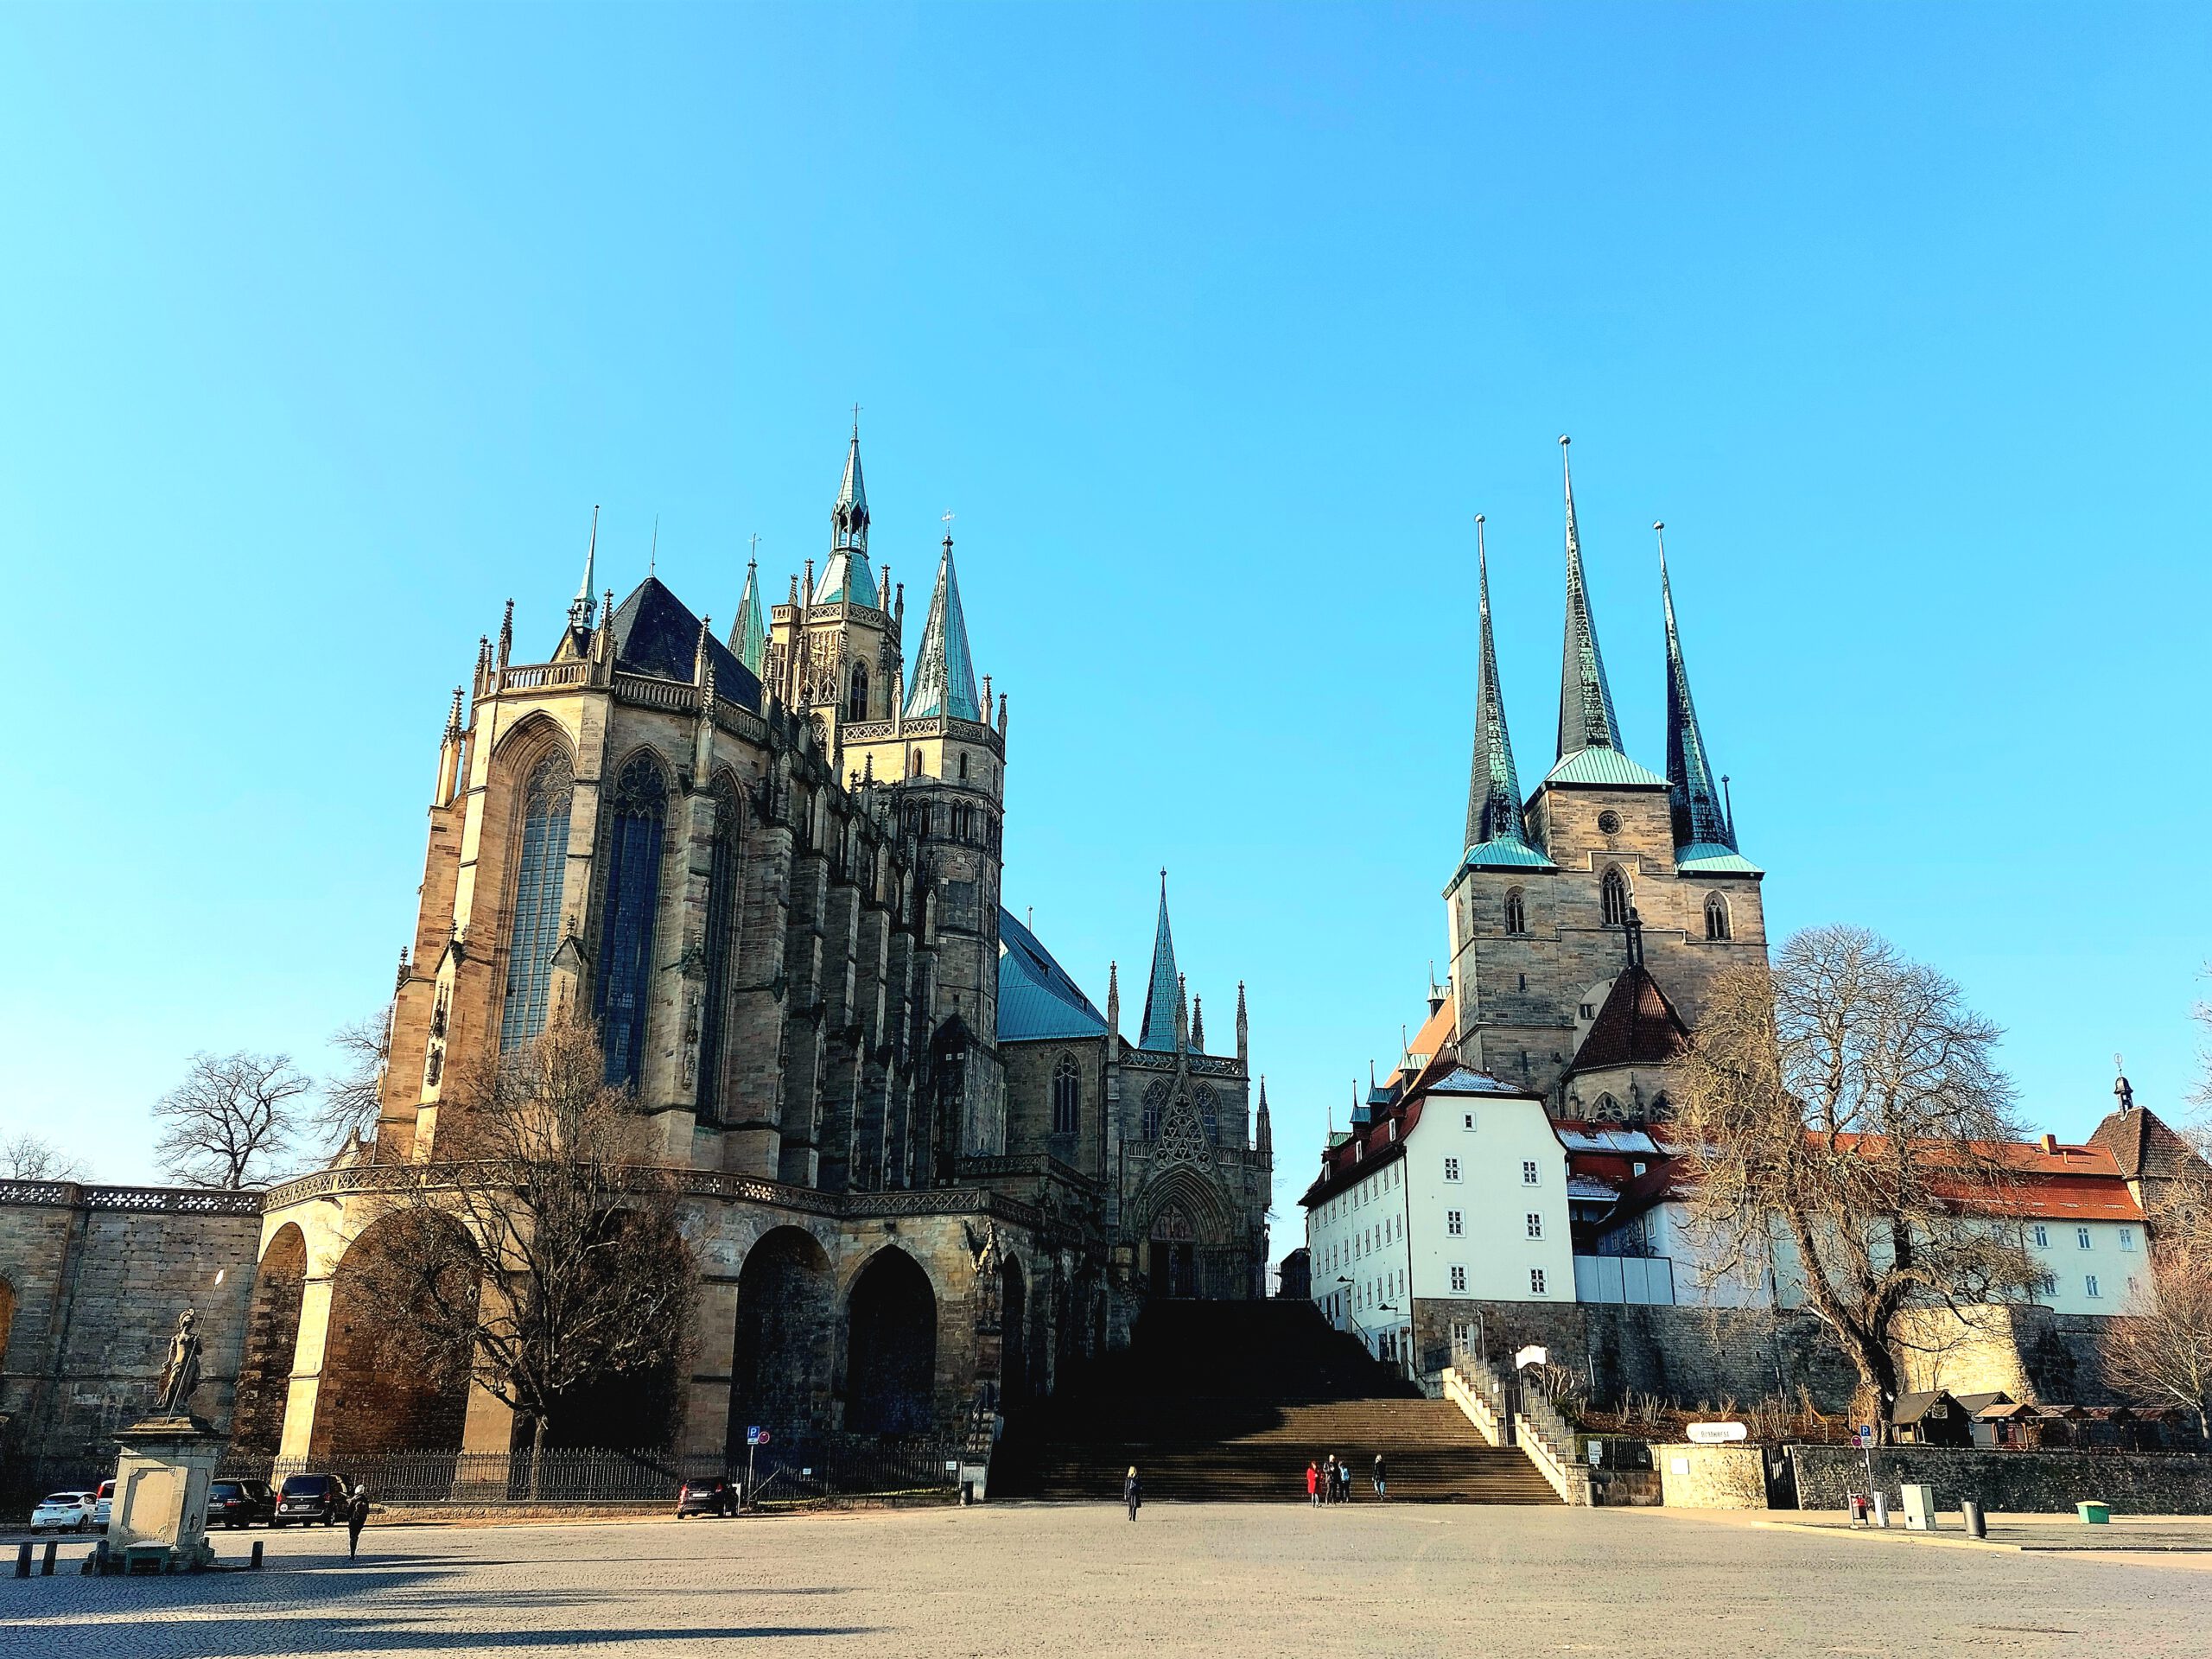 Ein Städtetrip nach Erfurt zählt zu einem der schönsten Reiseziele in Deutschland